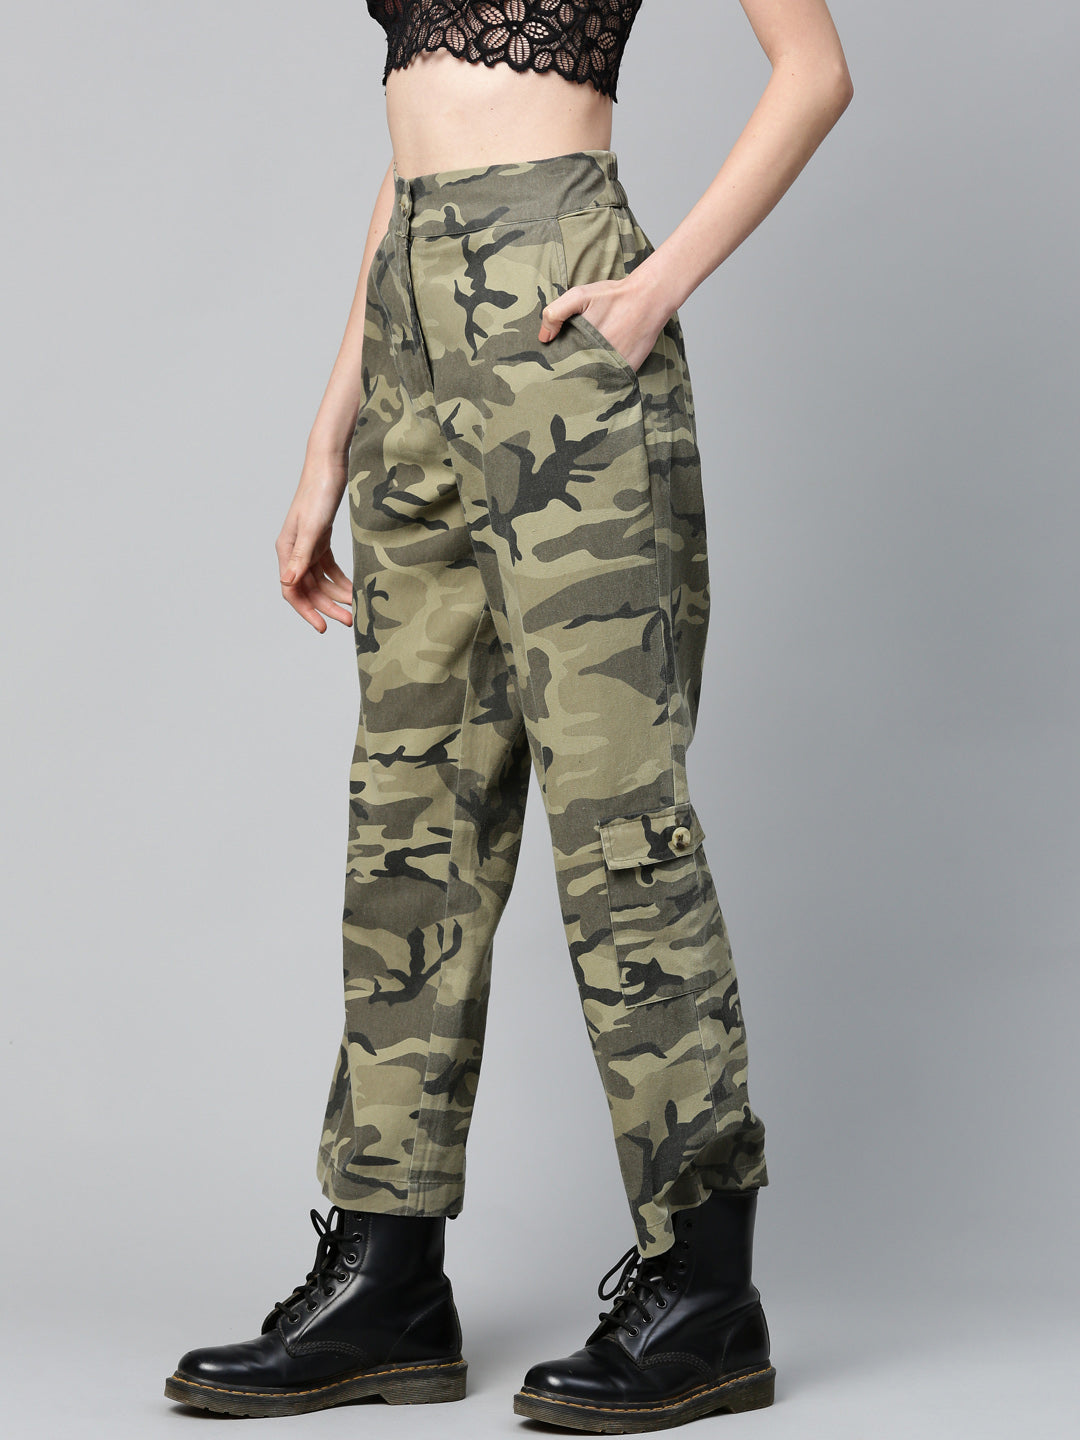 Women's High Rise Camo Cargo Jogger Pants - Army Cargo Jogger Pants – Moda  Xpress